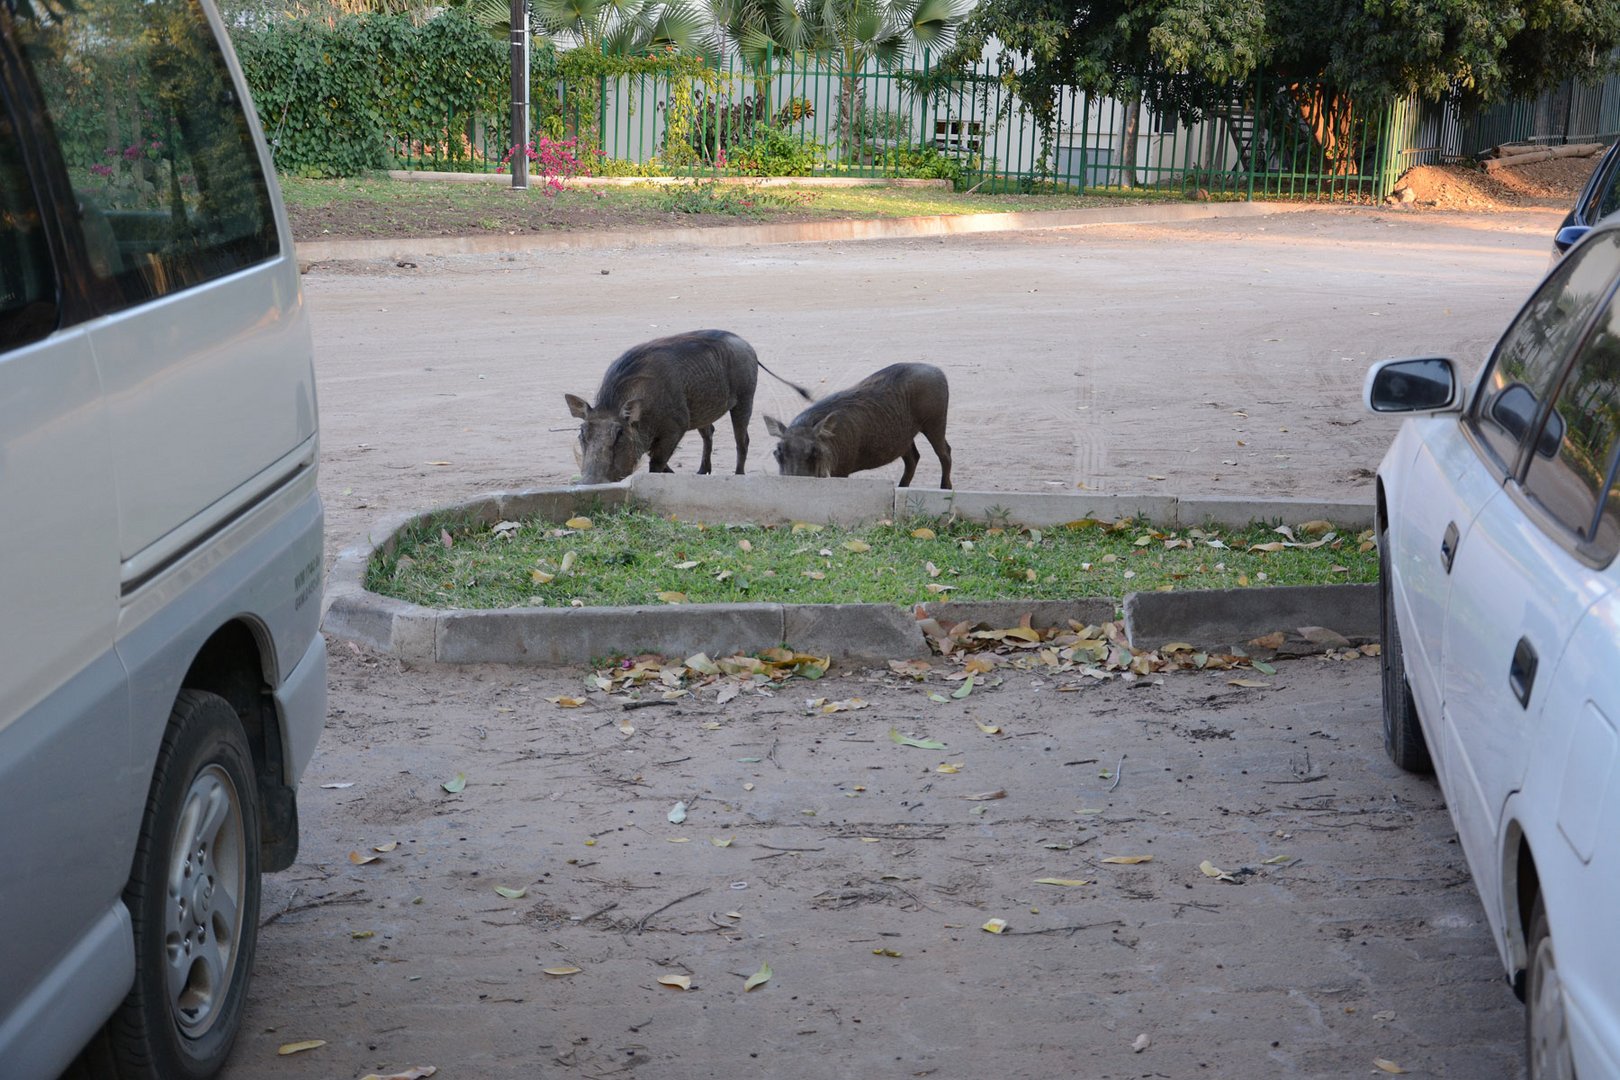  Warzenschweine in der Stadt